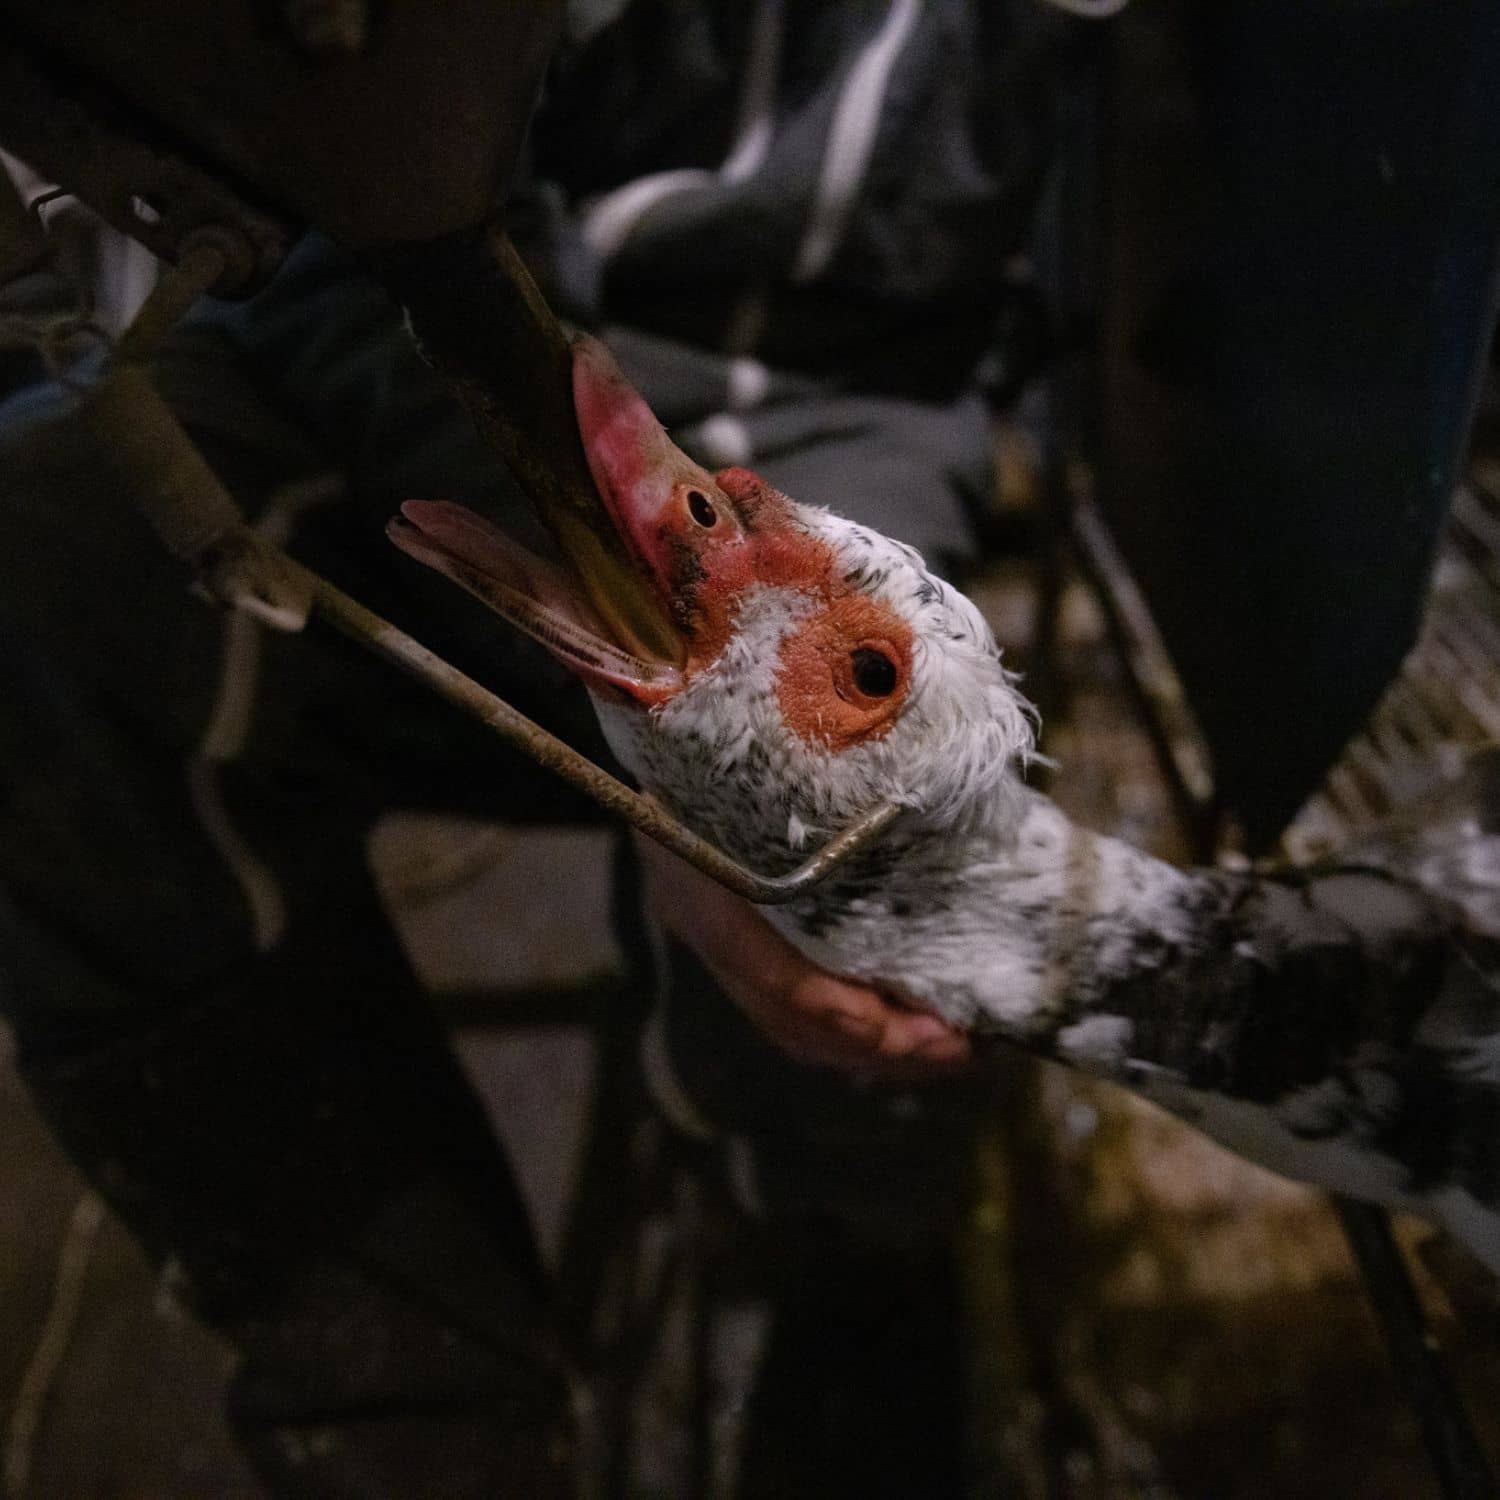 Un pato blanco con el pico rojo es alimentado a la fuerza para producir foie gras con un tubo que le han introducido en su garganta.